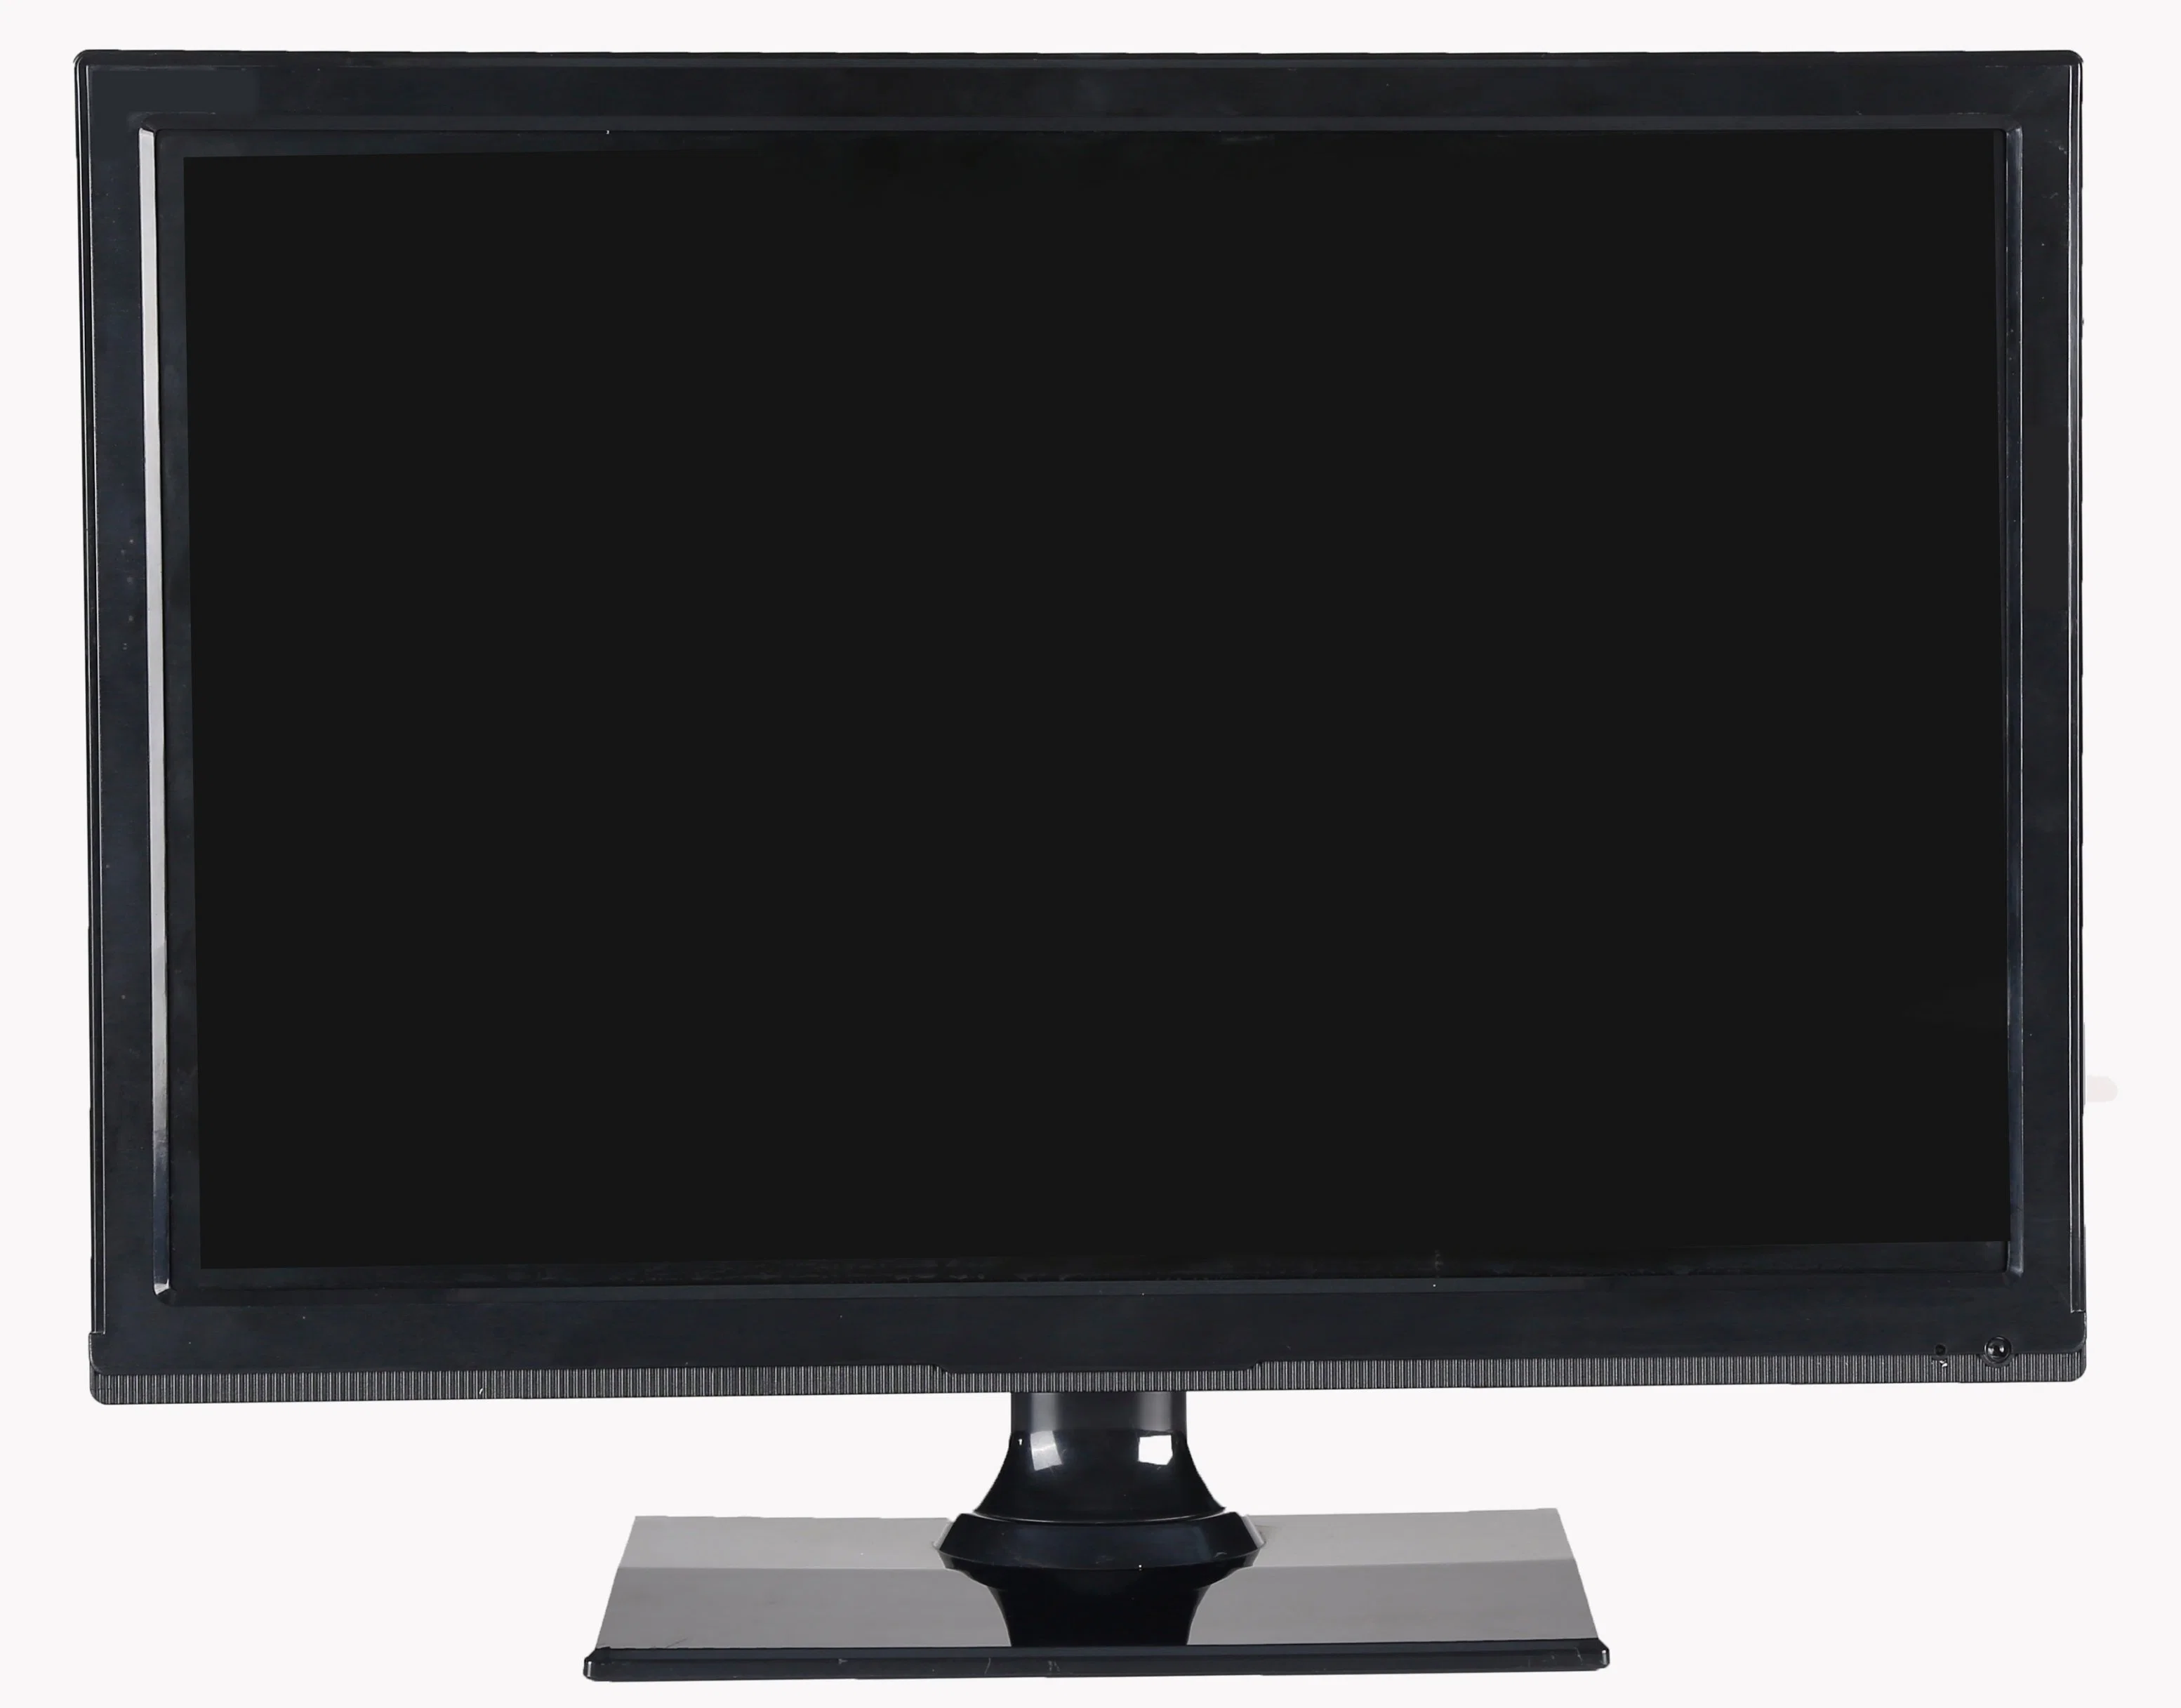 Meilleur Cheap Full HD Digital TV FHD 32 39 40 42 50 55 60 65 pouces lcd TV avec LED lumière noire